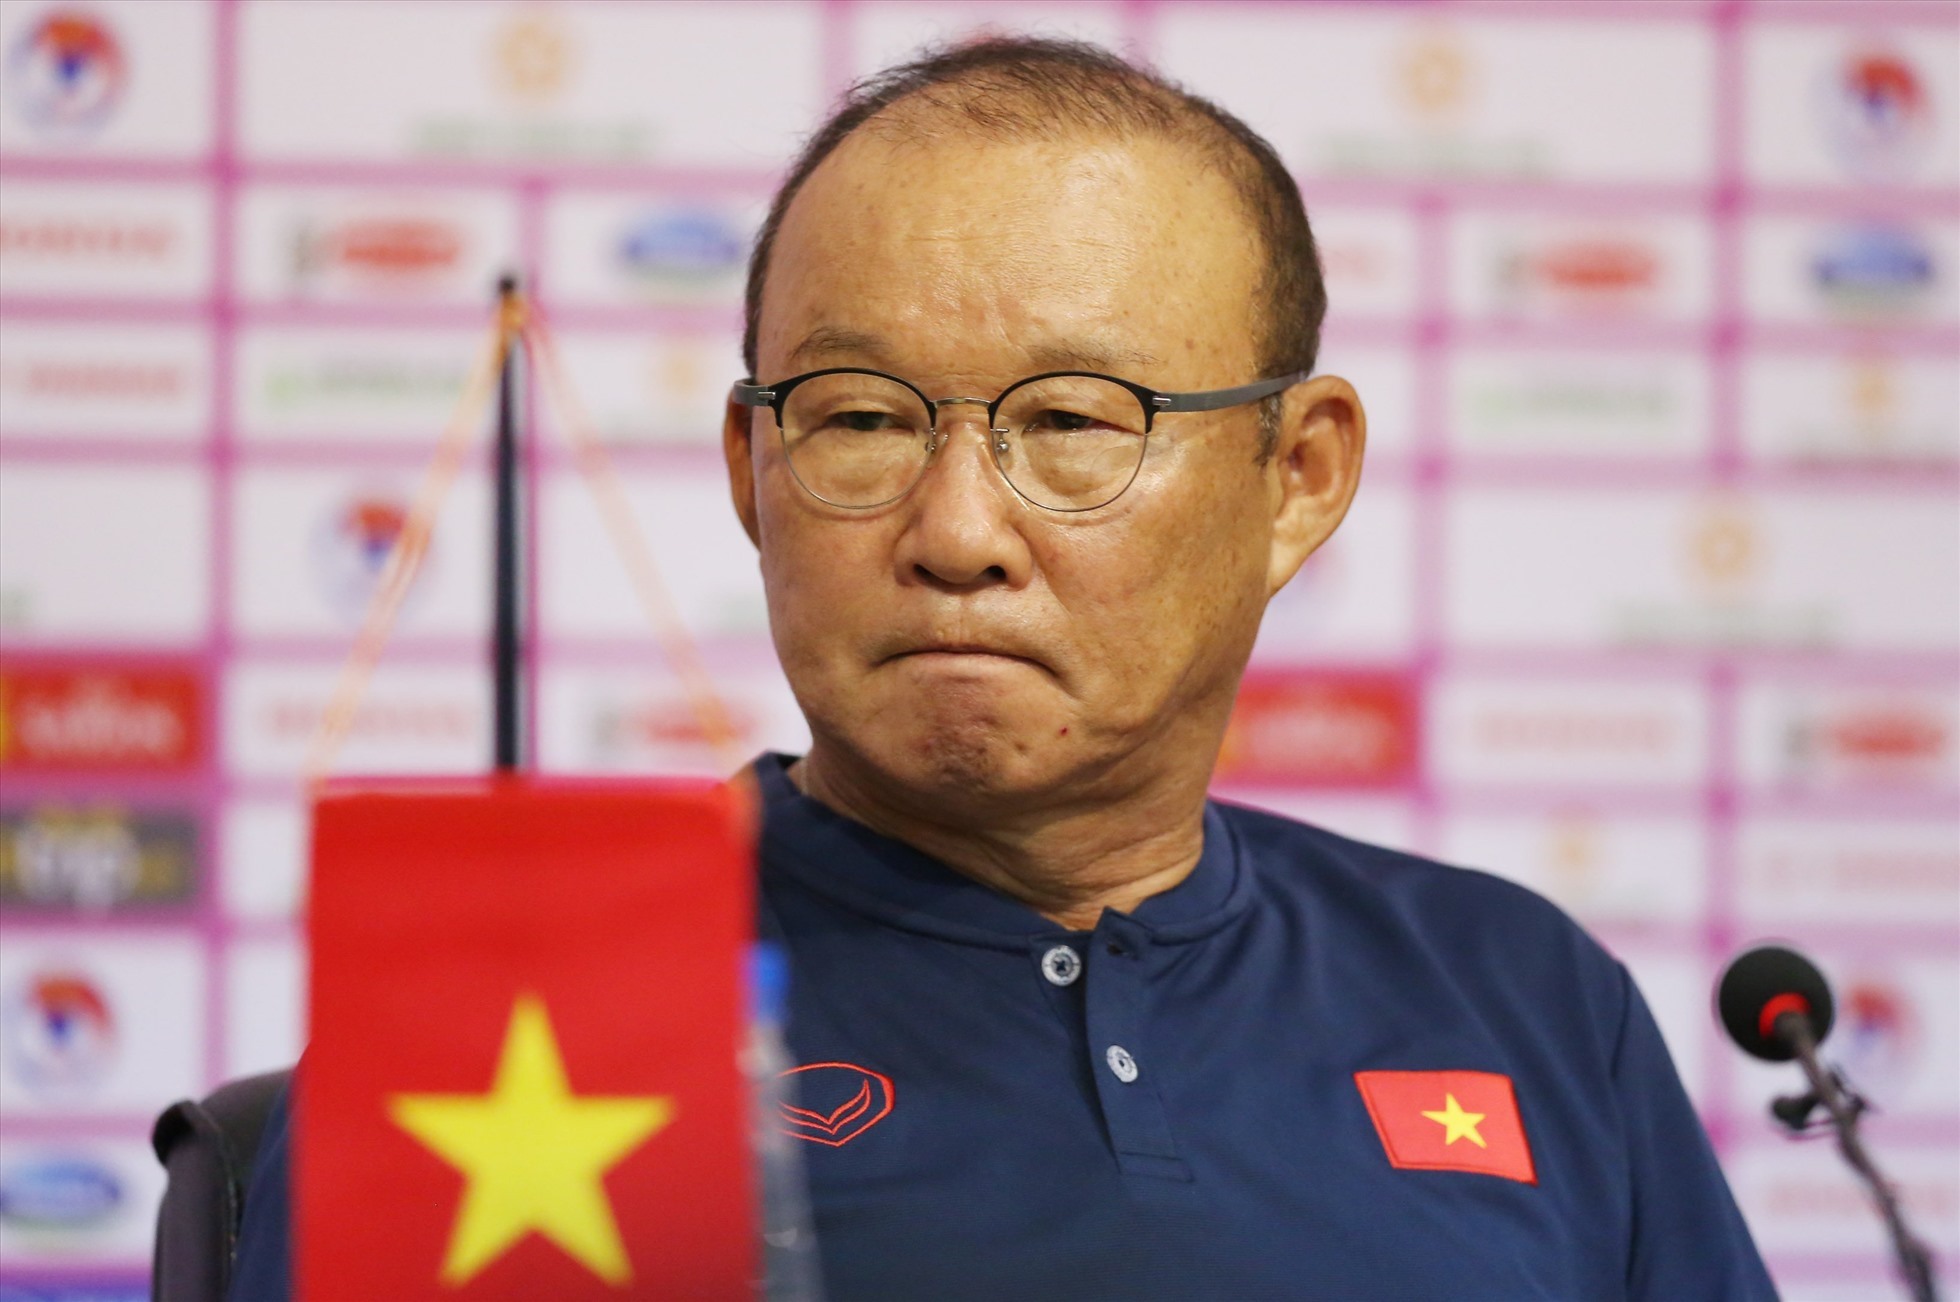 Báo giới Trung Quốc mong muốn huấn luyện Park về dẫn dắt đội tuyển Trung Quốc. Ảnh: Đ.Đ